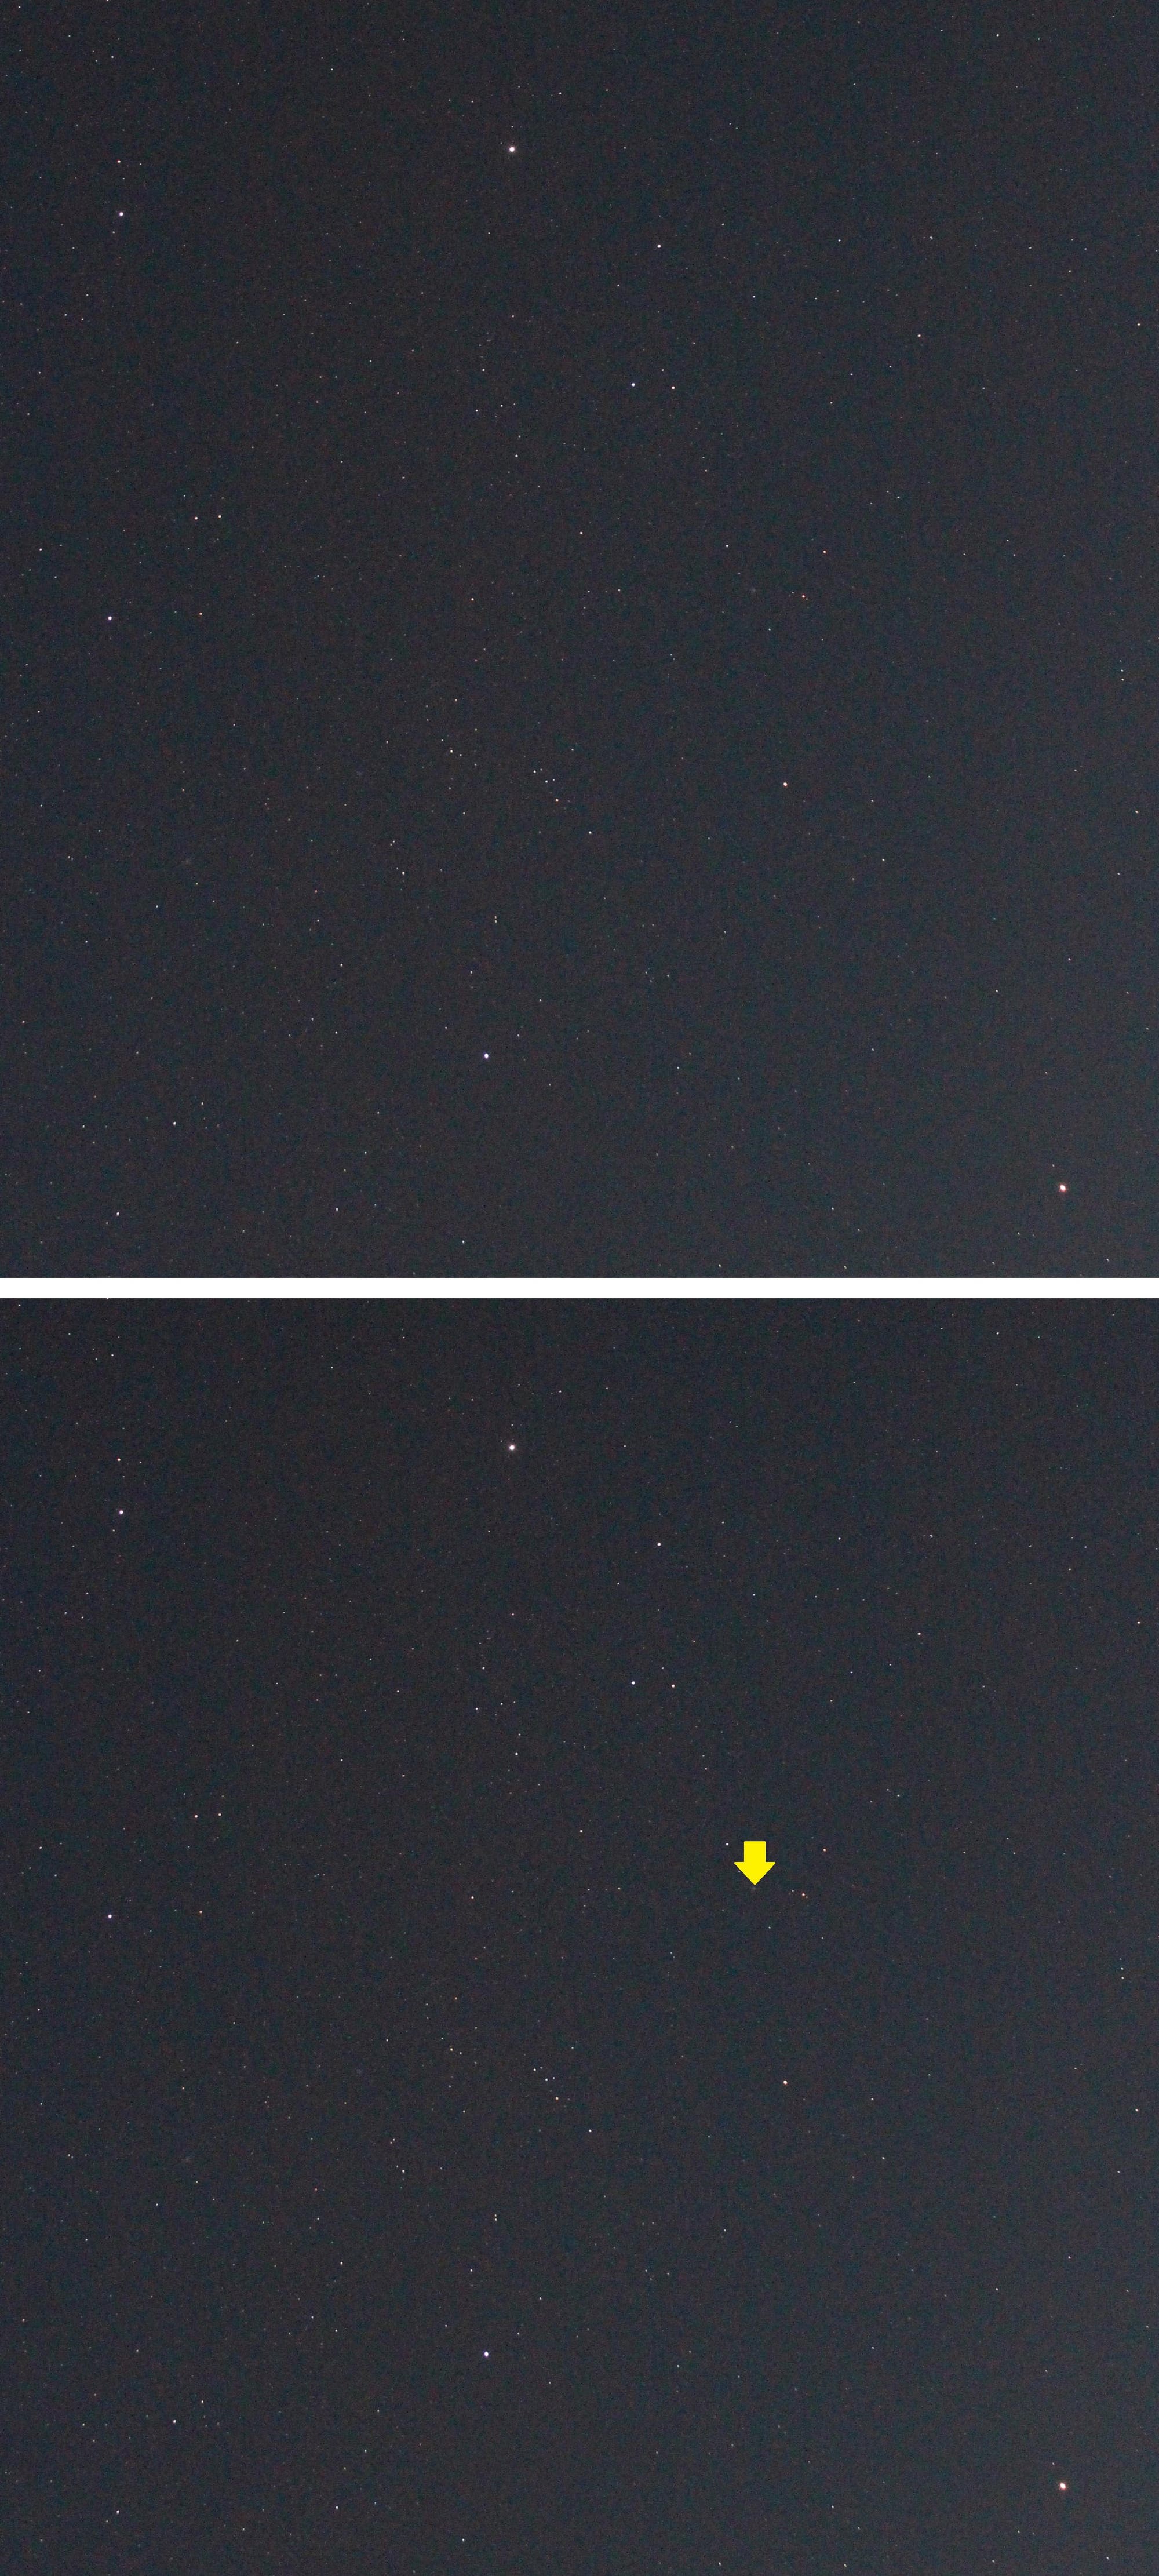 Komet C/2022 E3 (ZTF) im Sternbild Fuhrmann